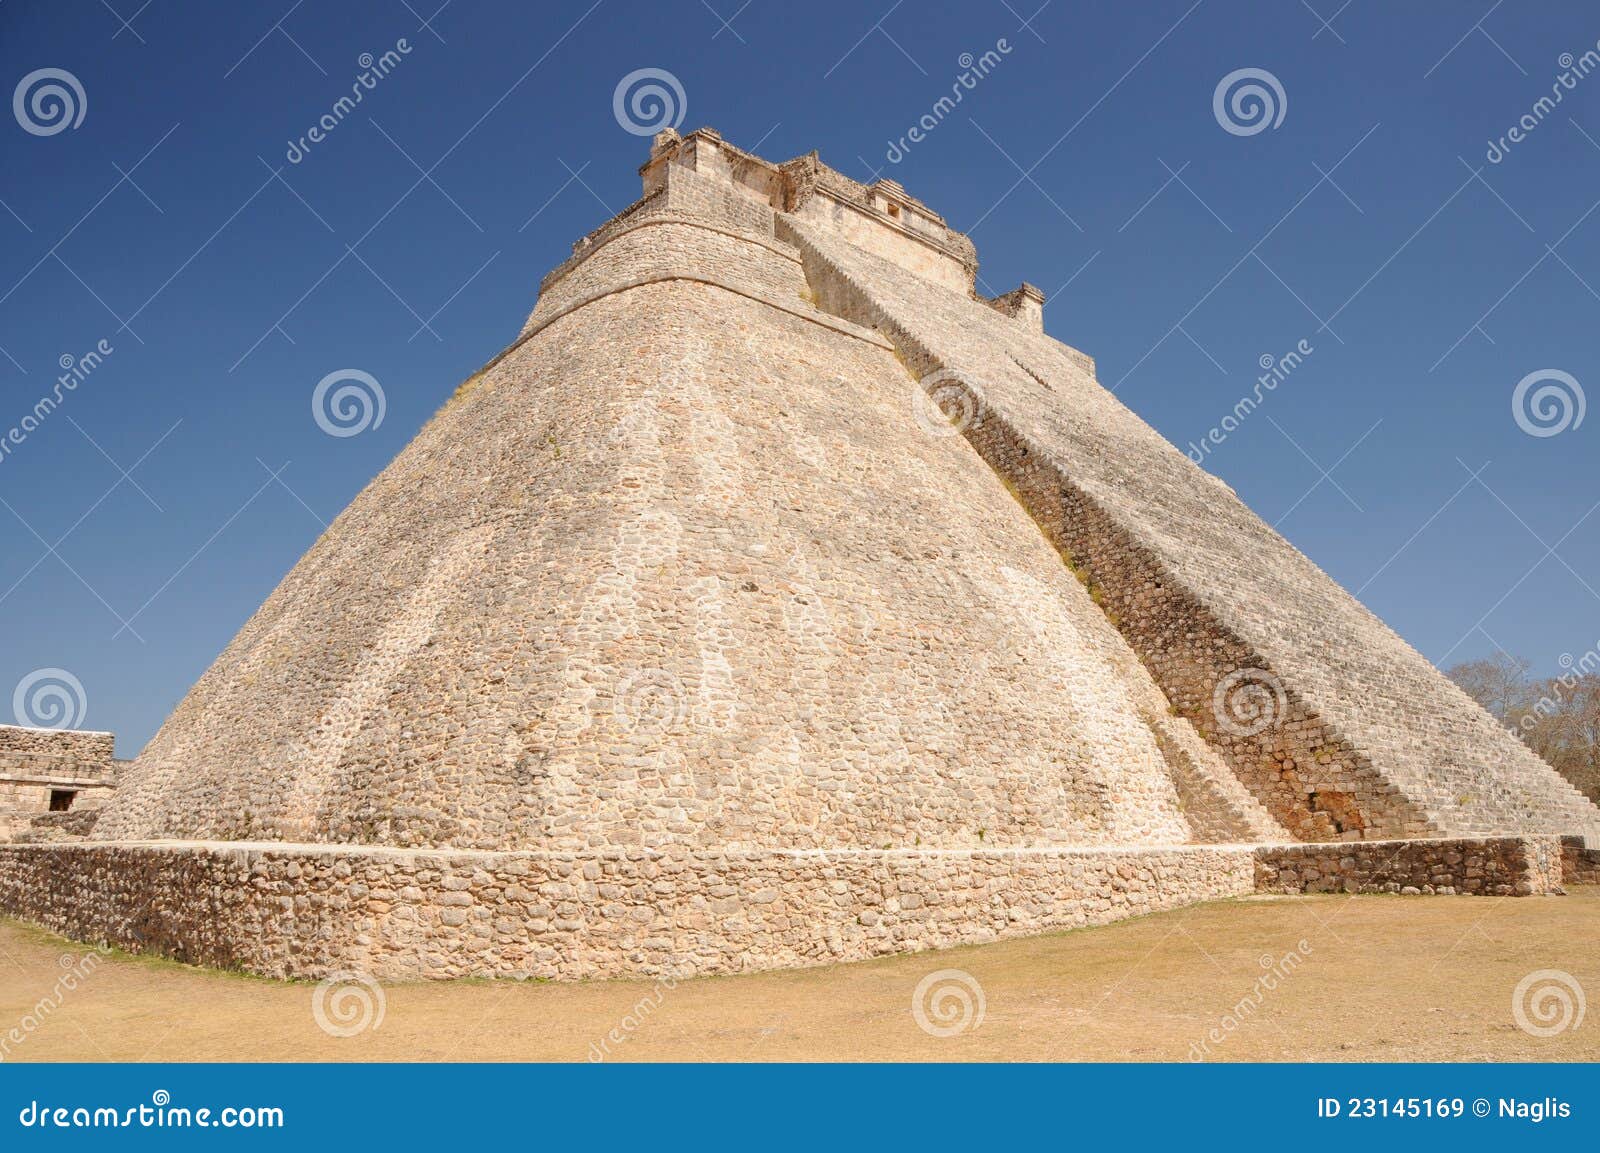 adivino pyramid in uxmal, mexico